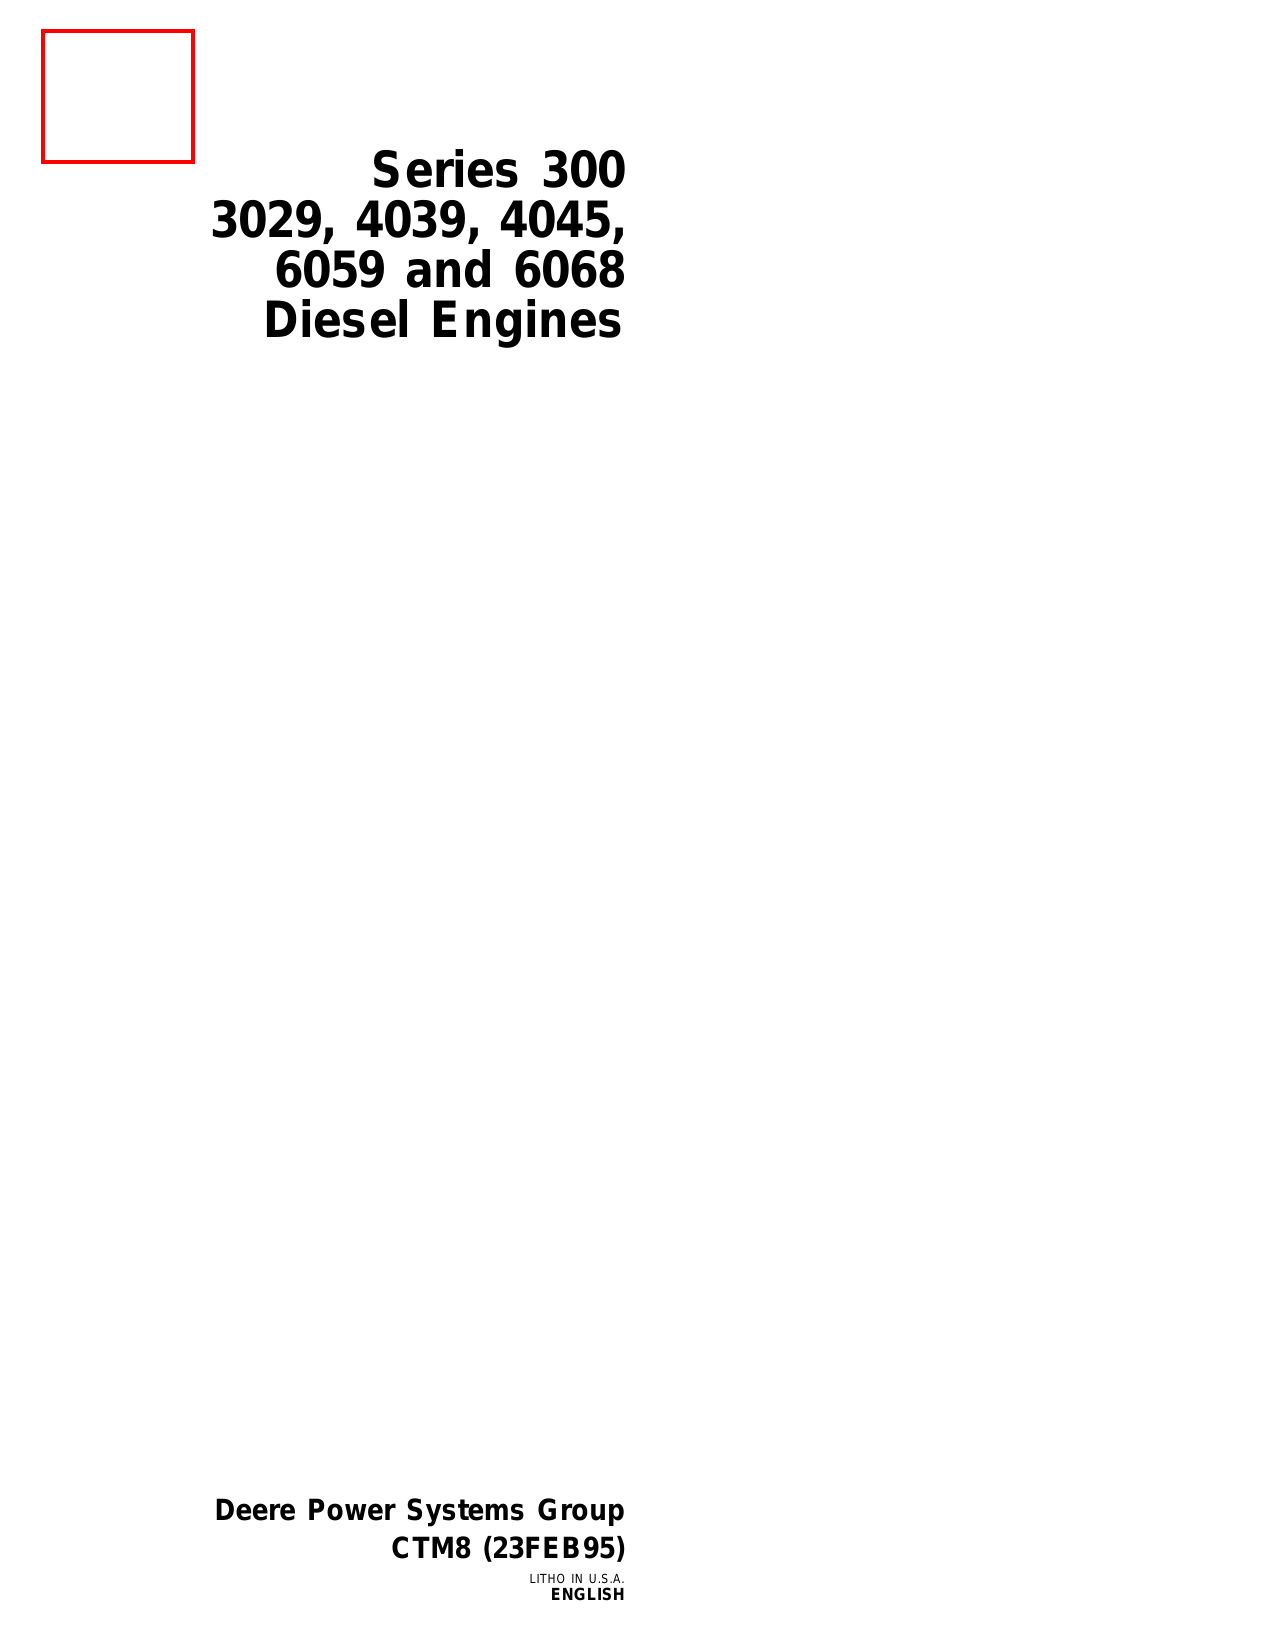 John Deere series 3000, 3029, 4039, 4045, 6059, 6068 diesel engine technical manual Preview image 1